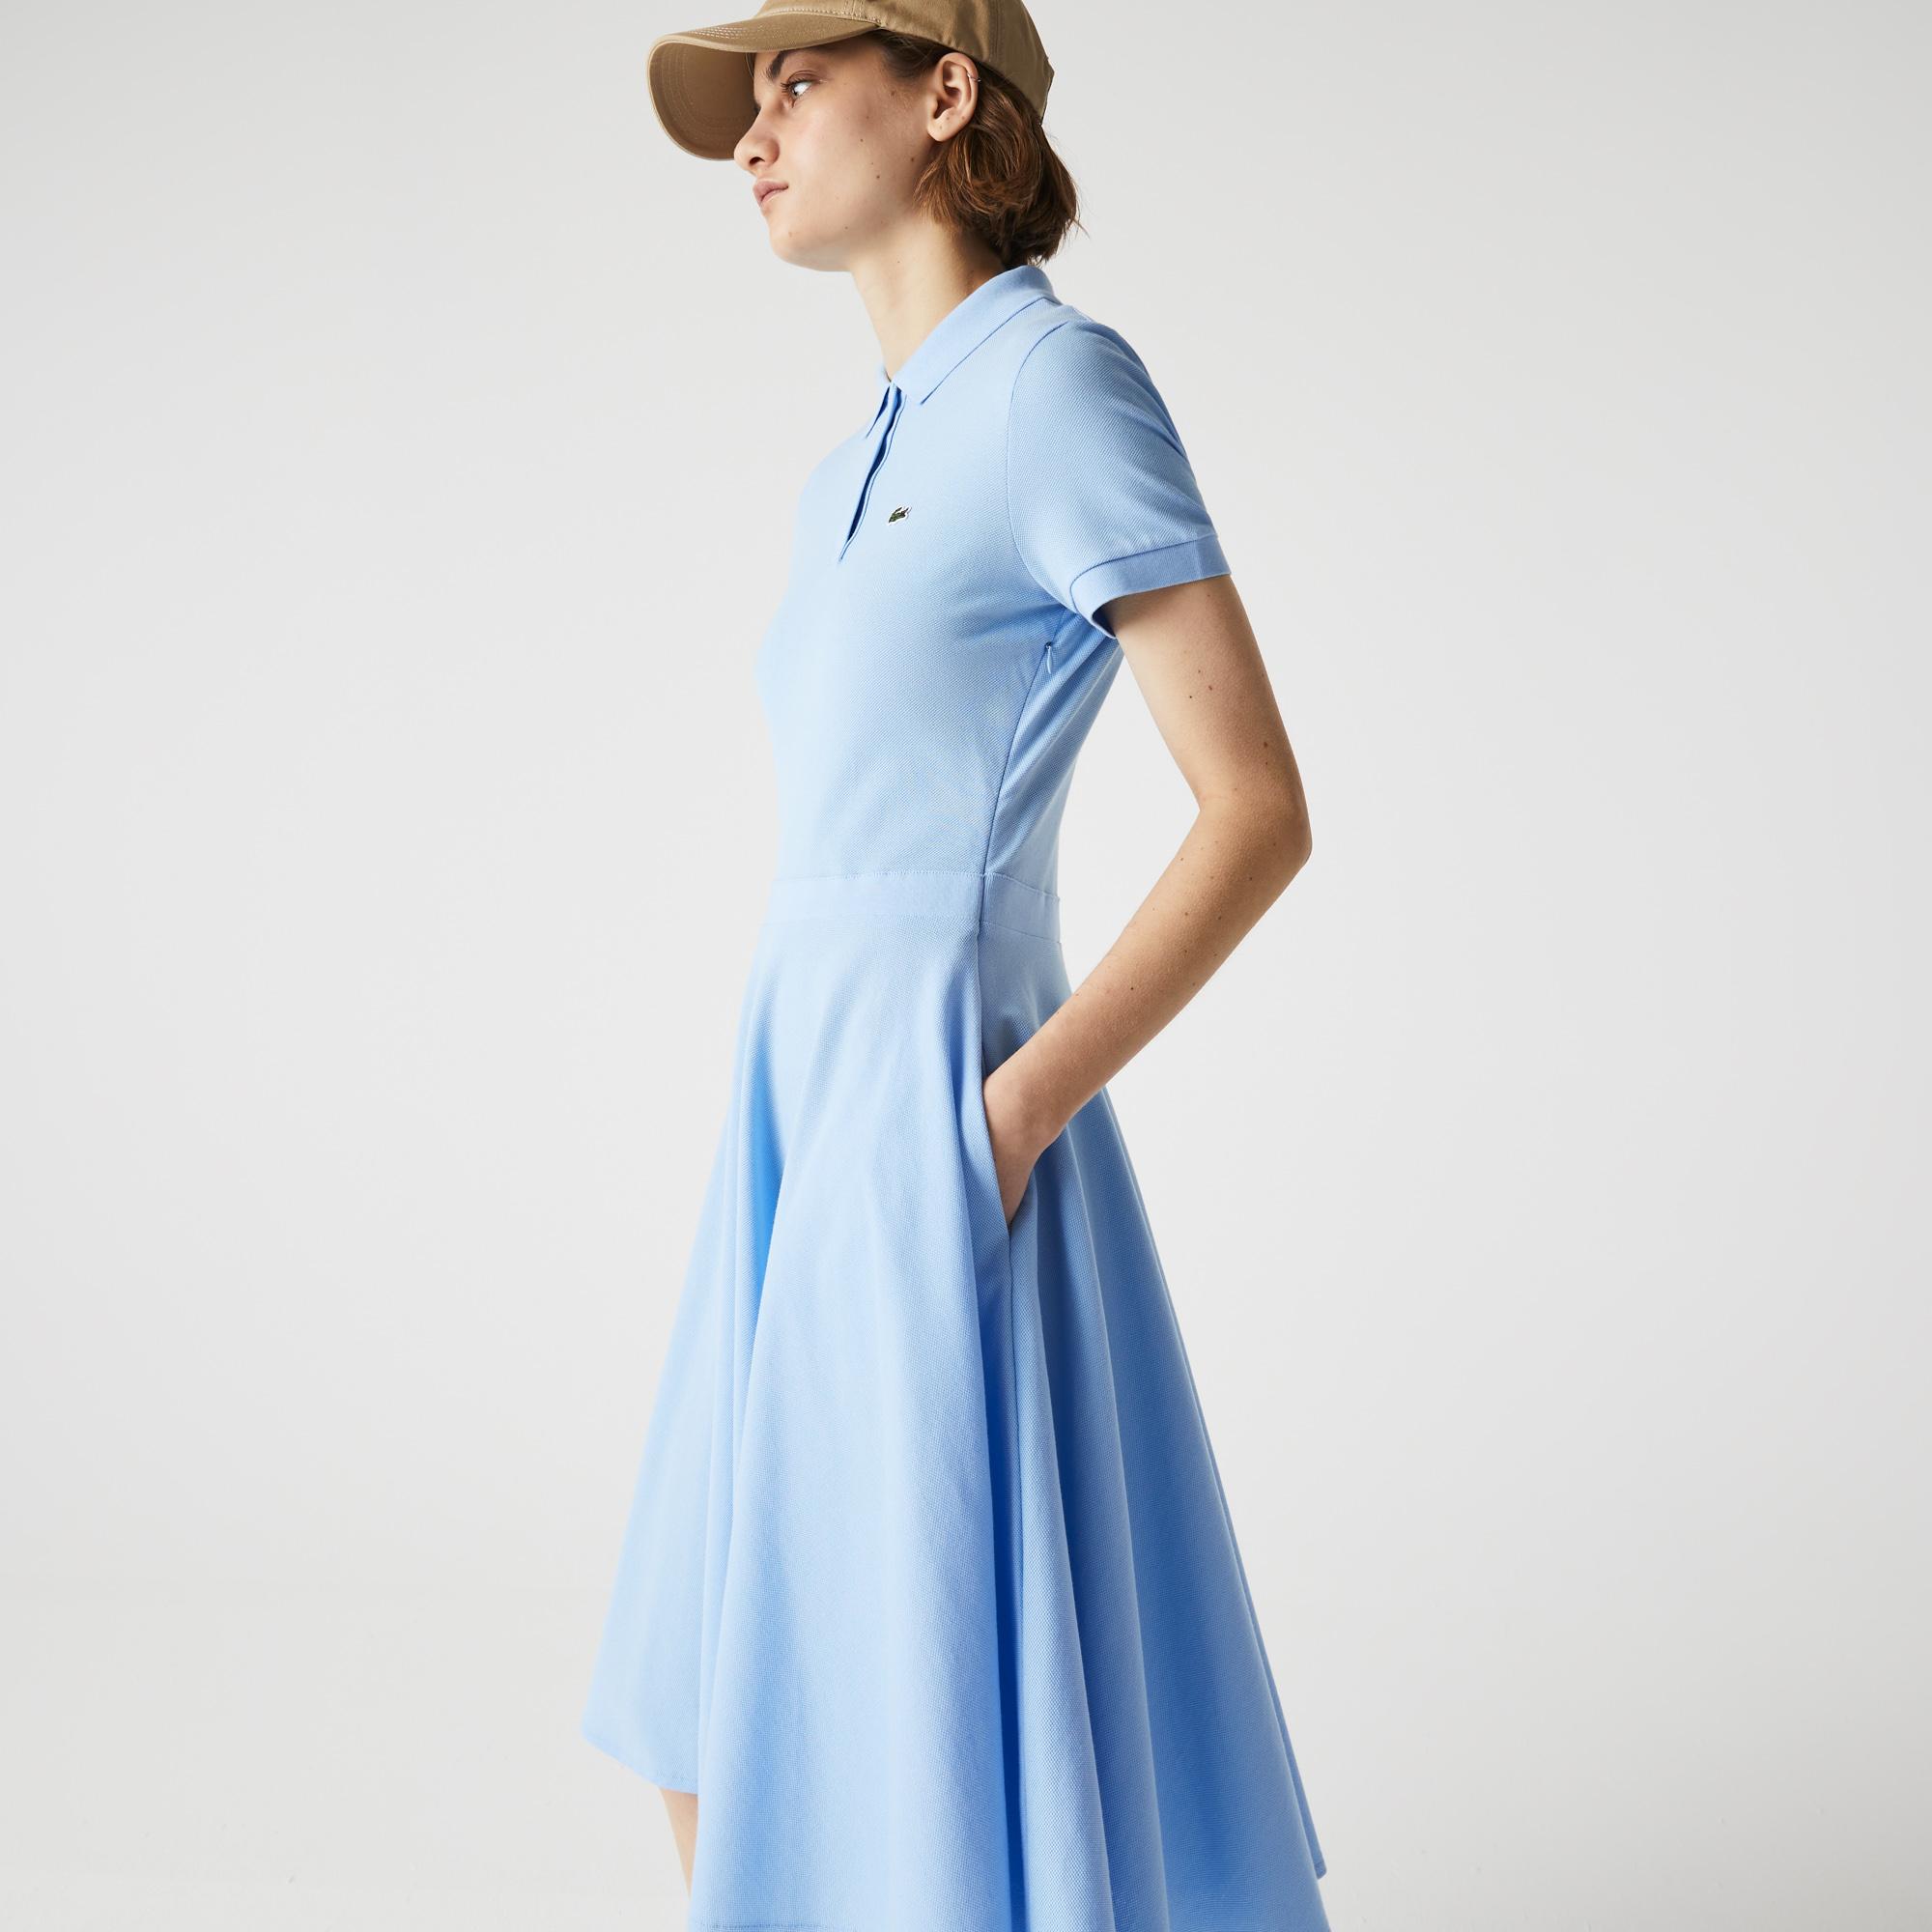 Lacoste Kadın Loose Fit Kısa Kollu Polo Yaka Mavi Elbise. 1